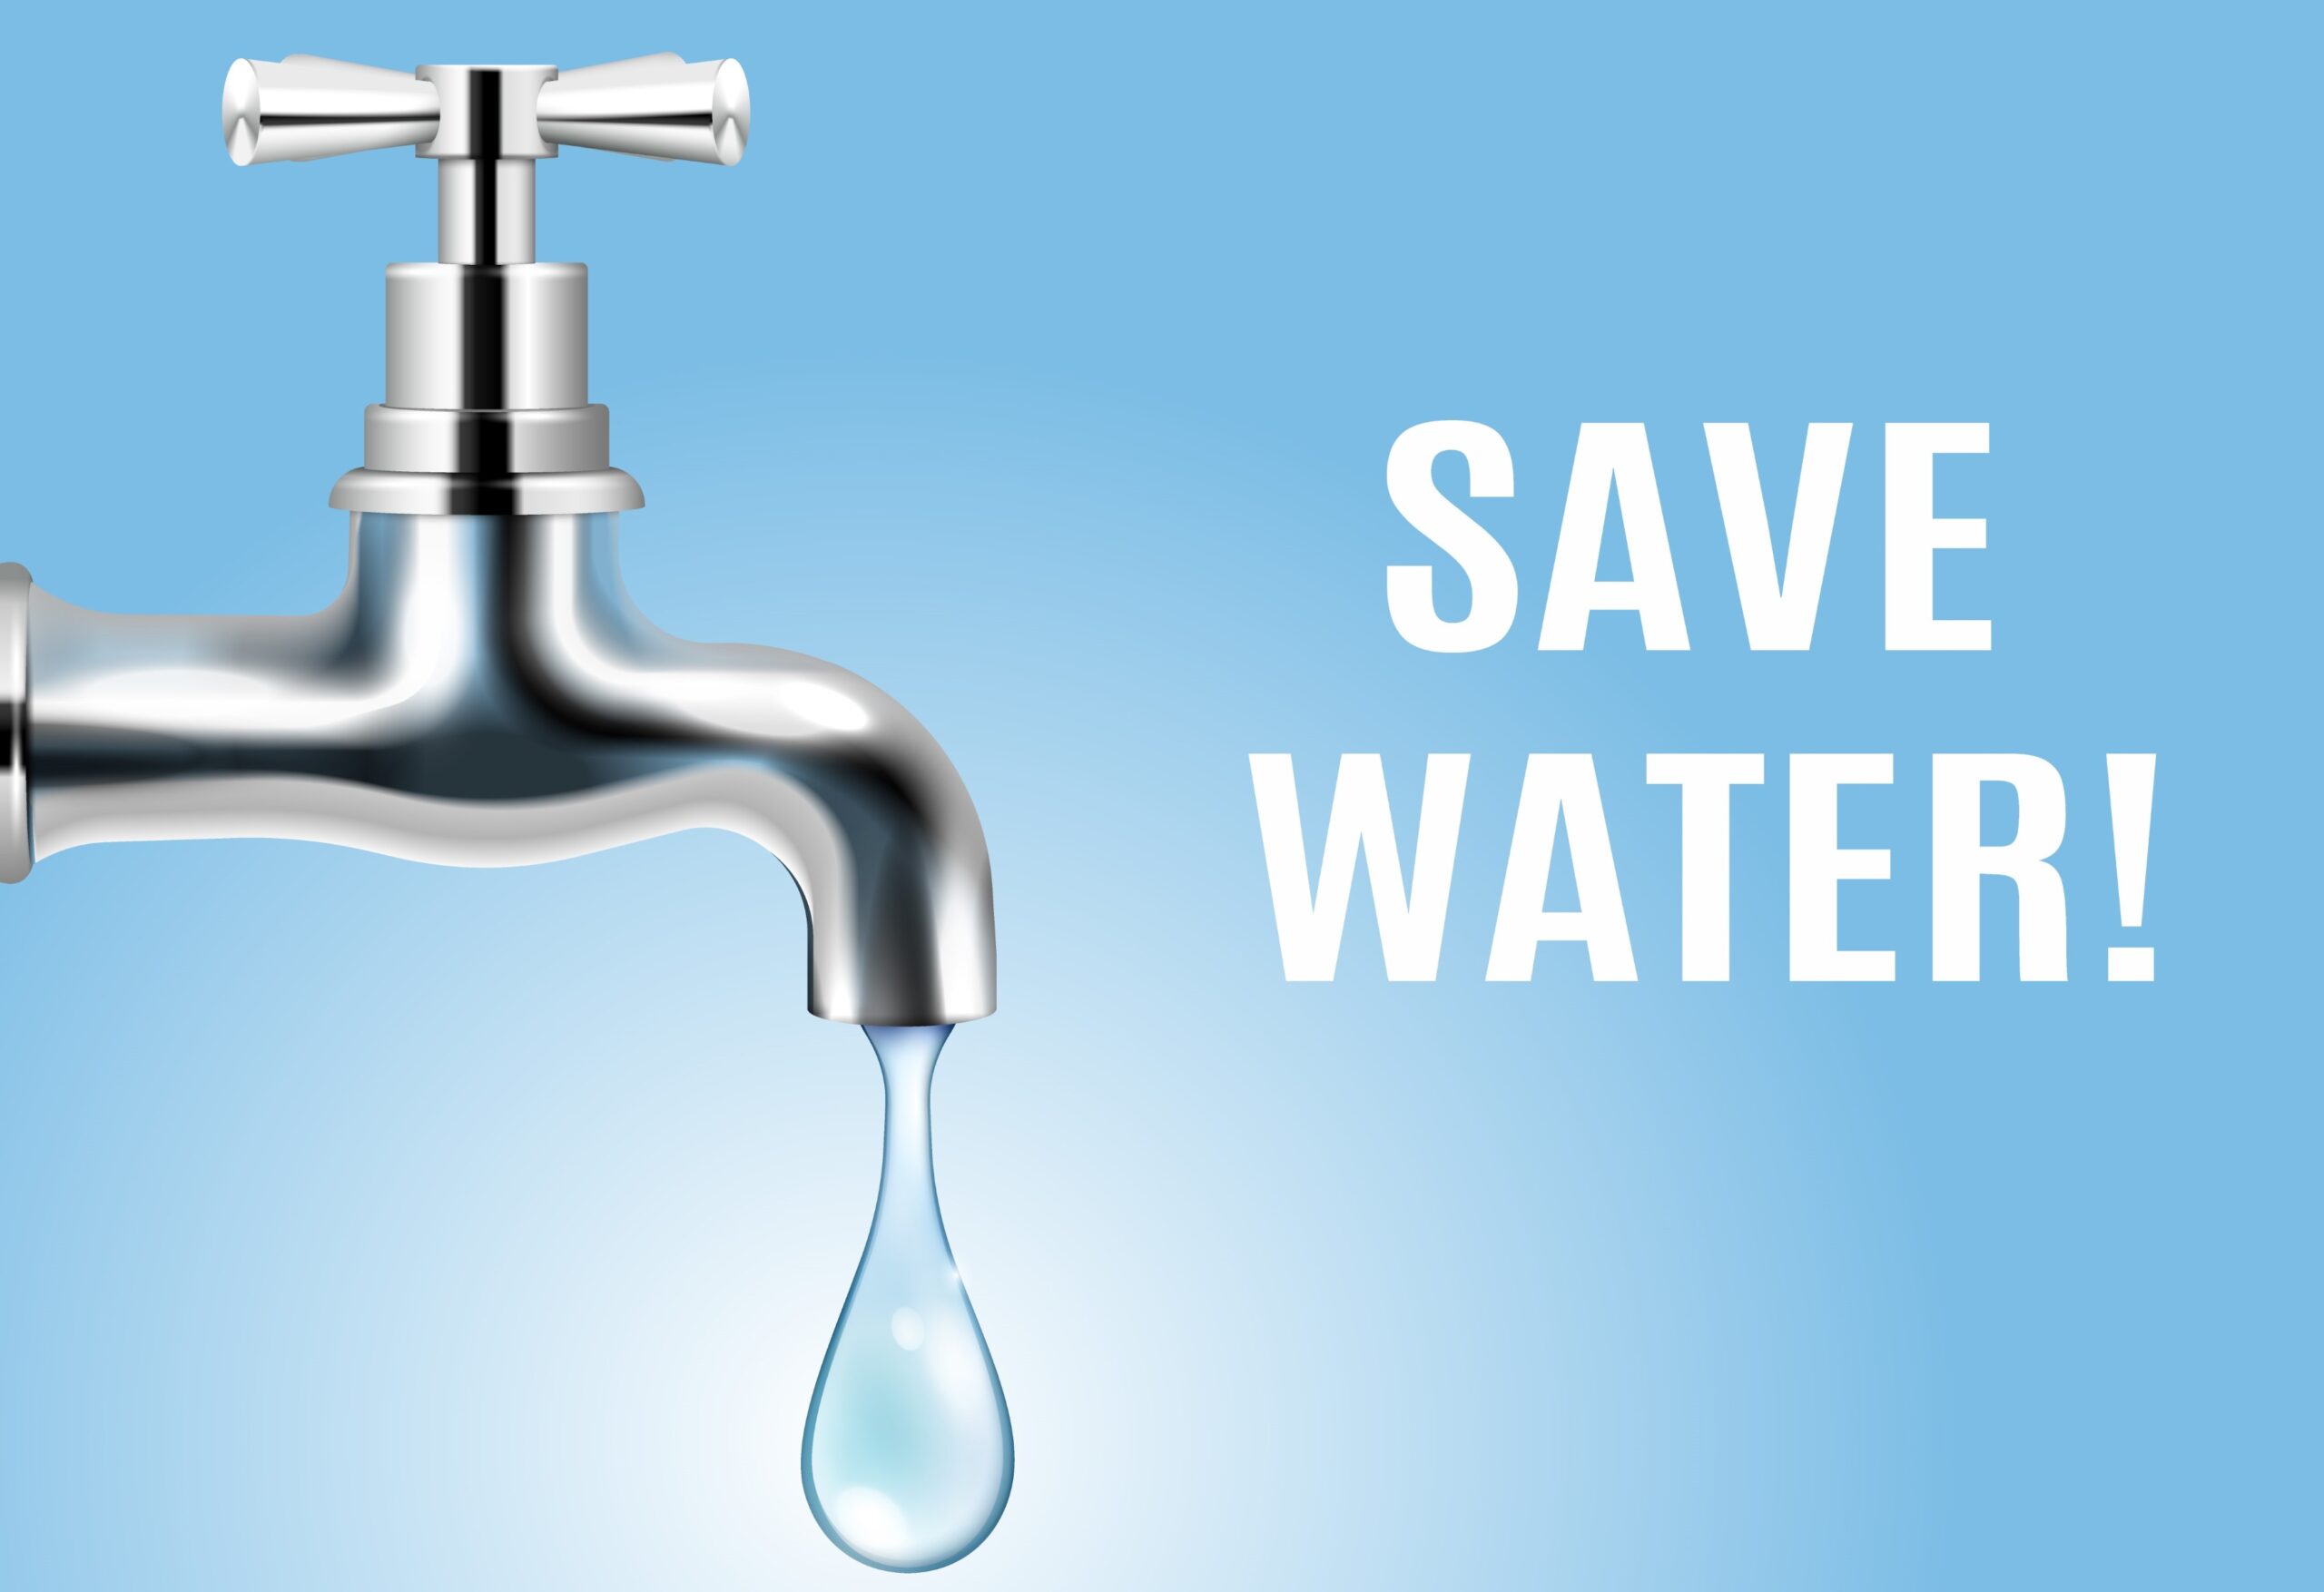 घरेलू पानी का दुरुपयोग करने पर अब लगेगा 1000 रु. का जुर्माना